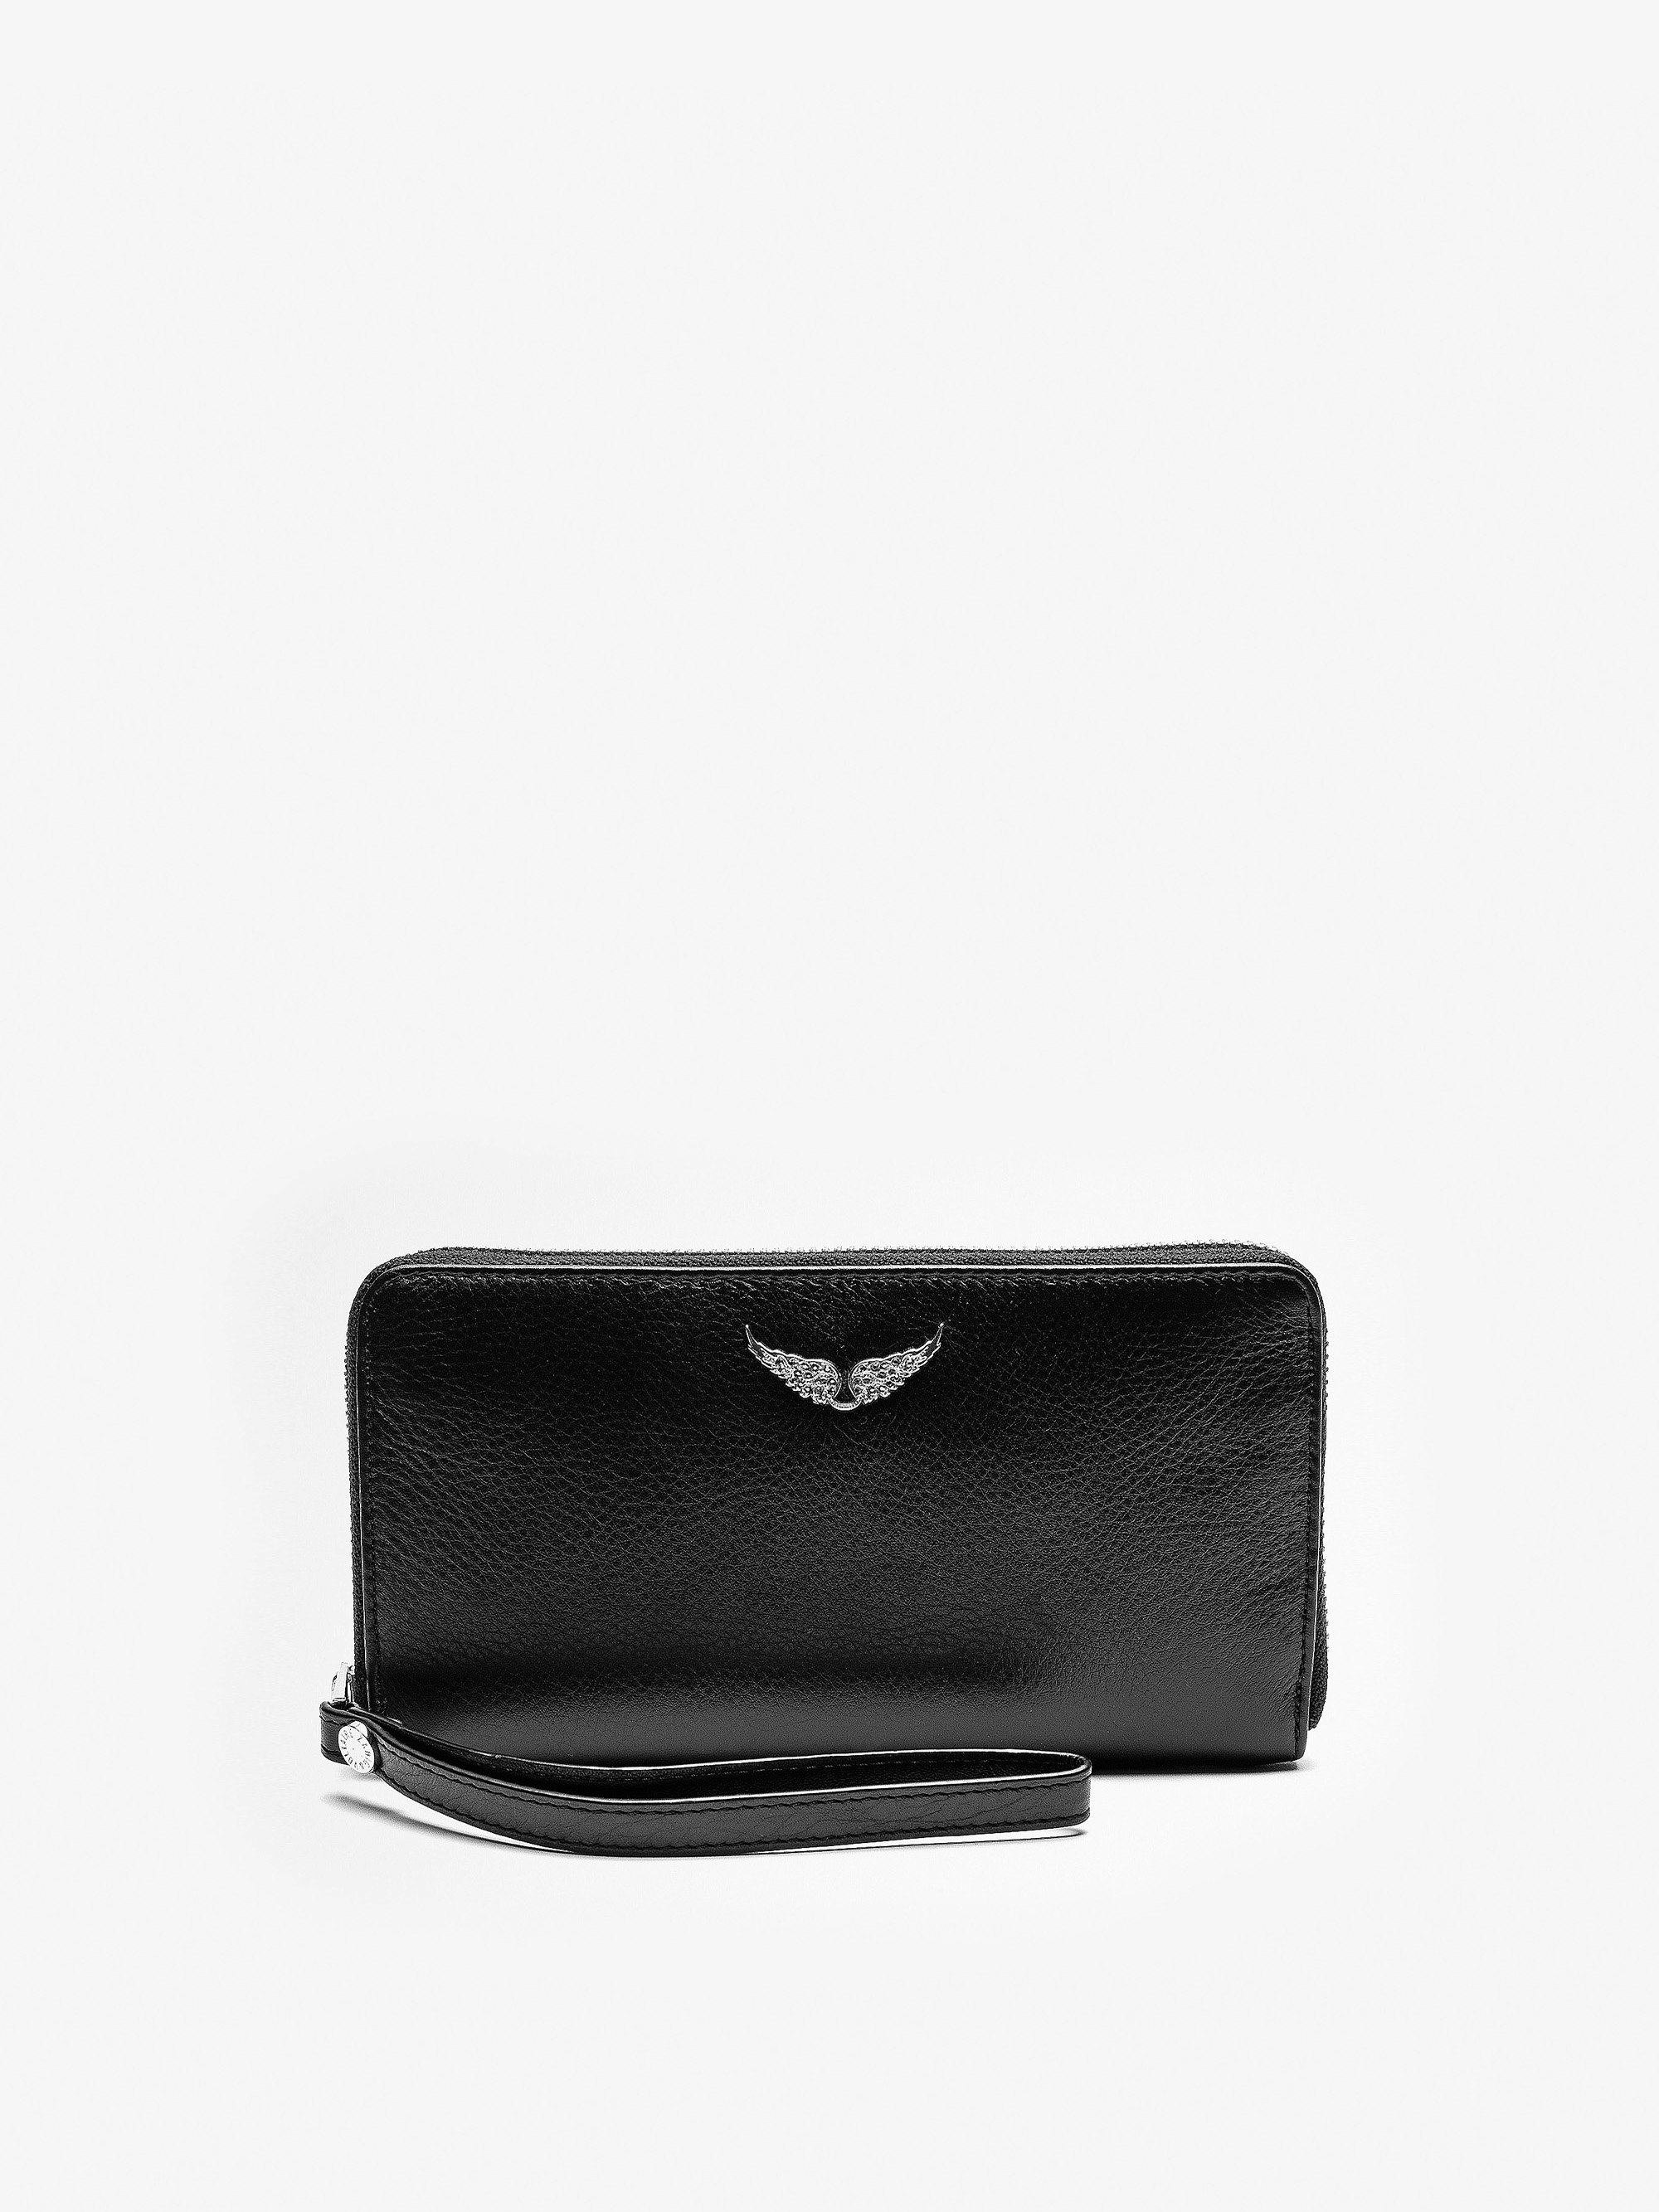 Brieftasche Compagnon - Damen-Portemonnaie aus schwarzem Leder.